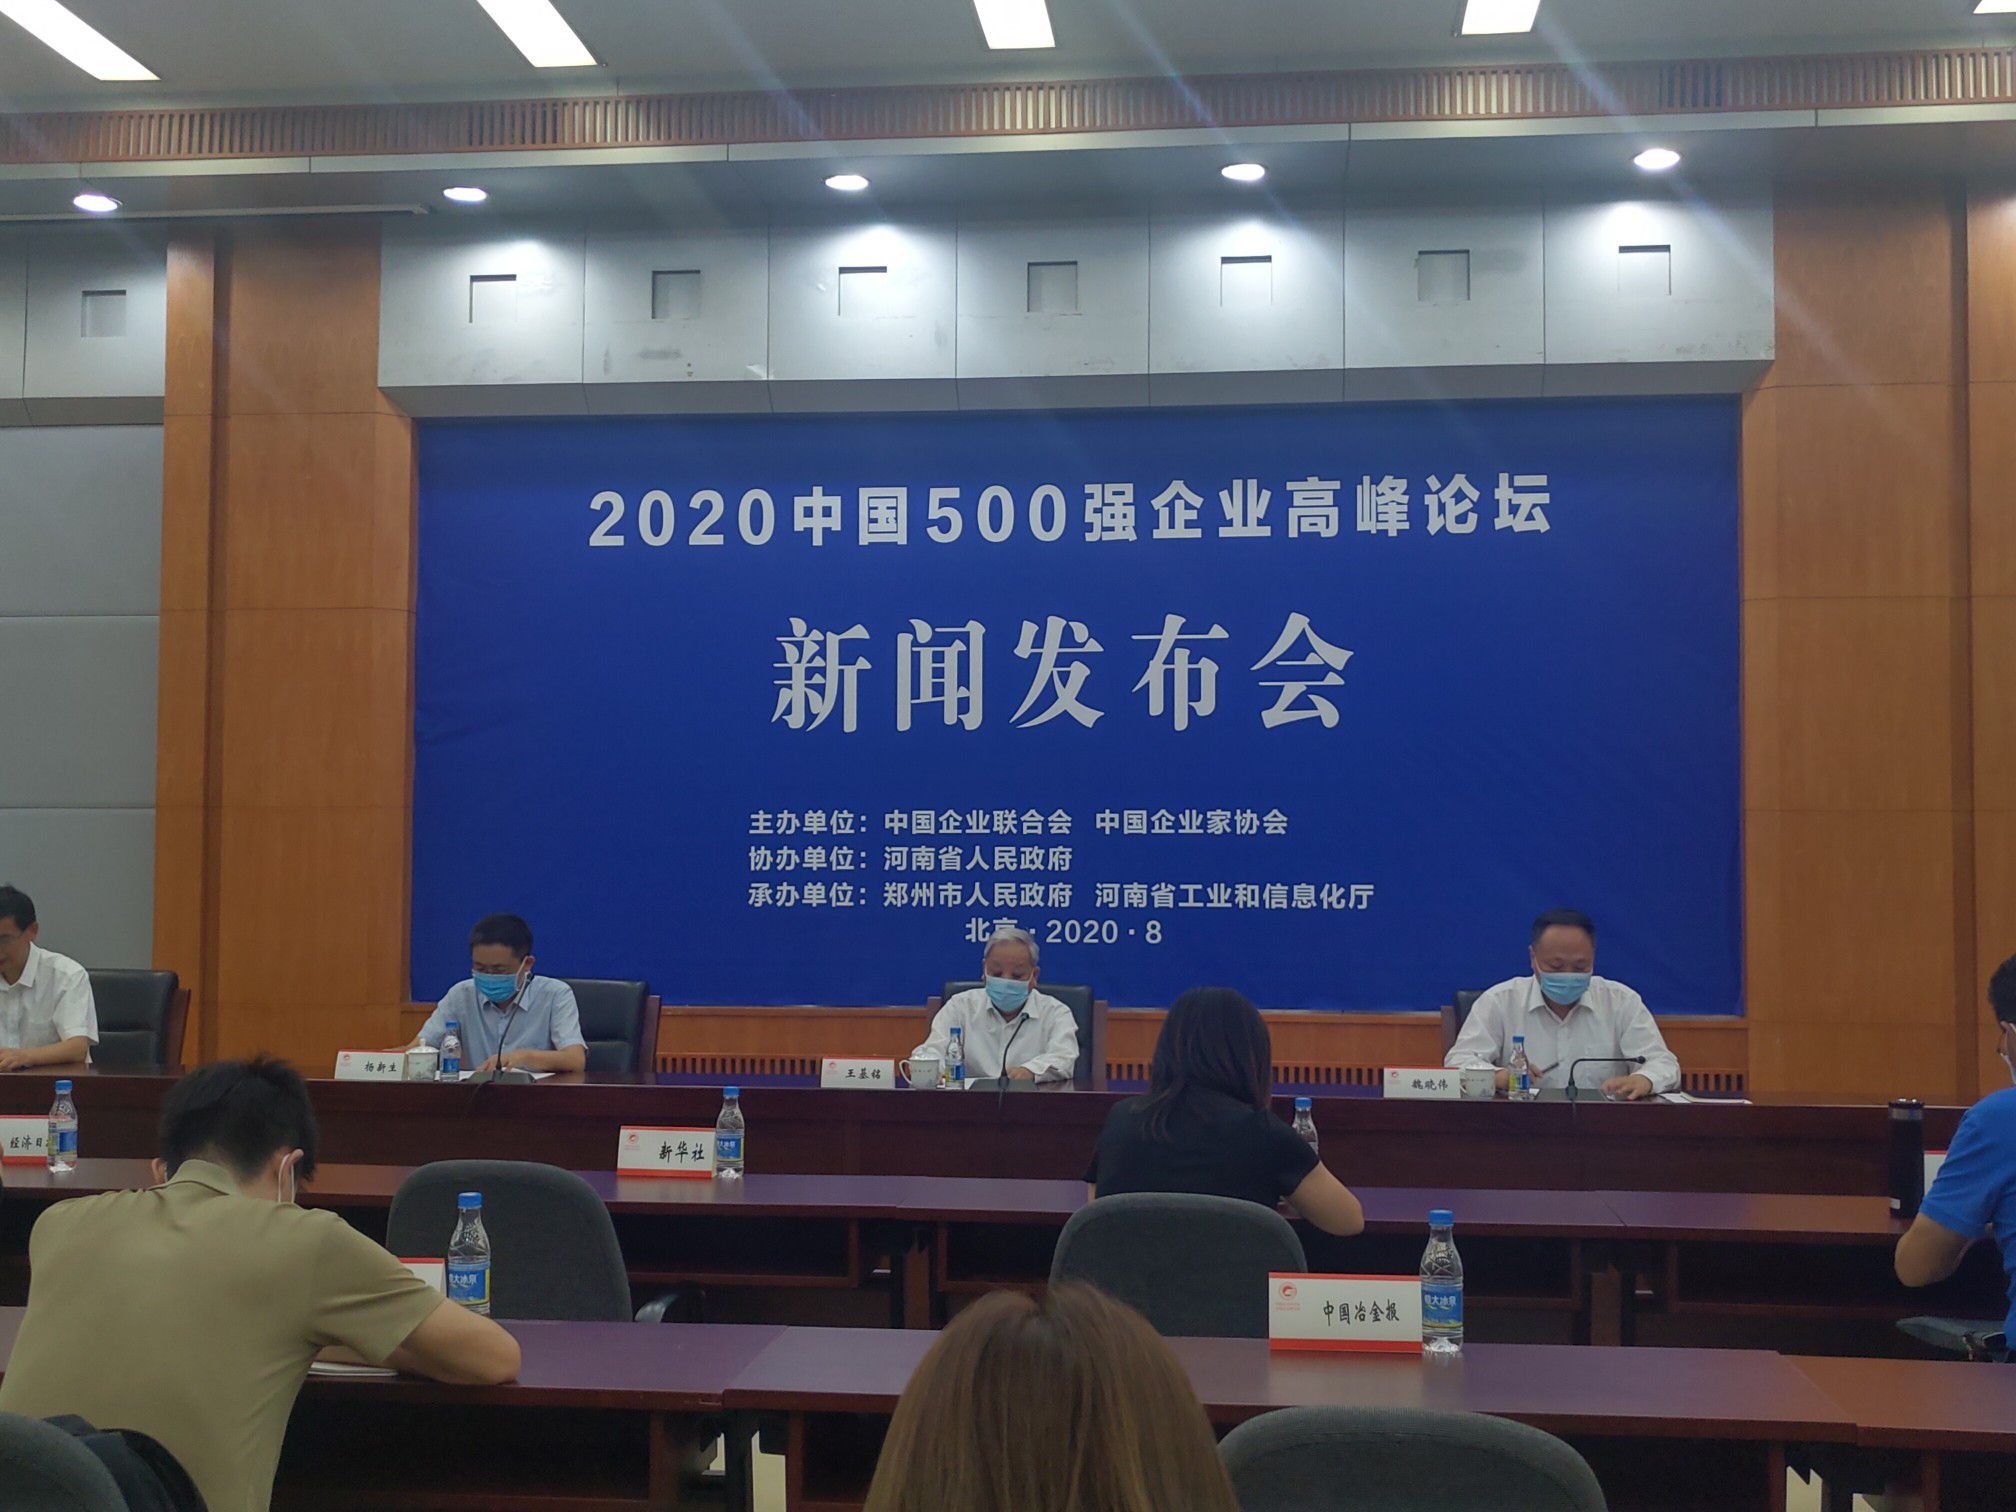 2020中国500强企业高峰论坛9月底在郑州举办  将发布一批重要榜单 举行12场平行论坛